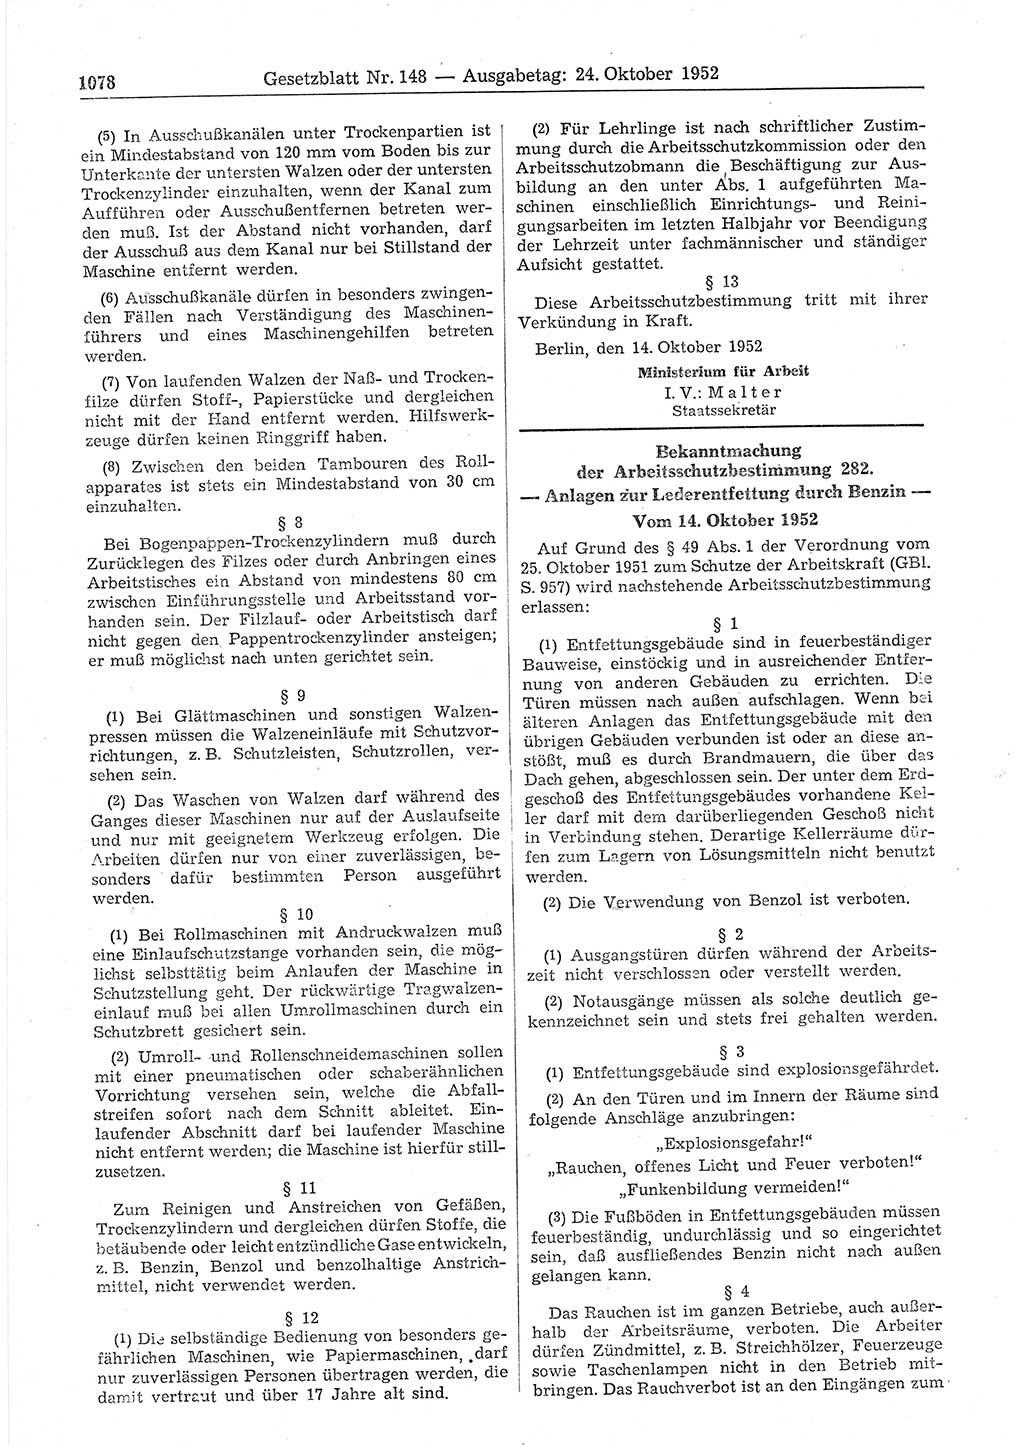 Gesetzblatt (GBl.) der Deutschen Demokratischen Republik (DDR) 1952, Seite 1078 (GBl. DDR 1952, S. 1078)